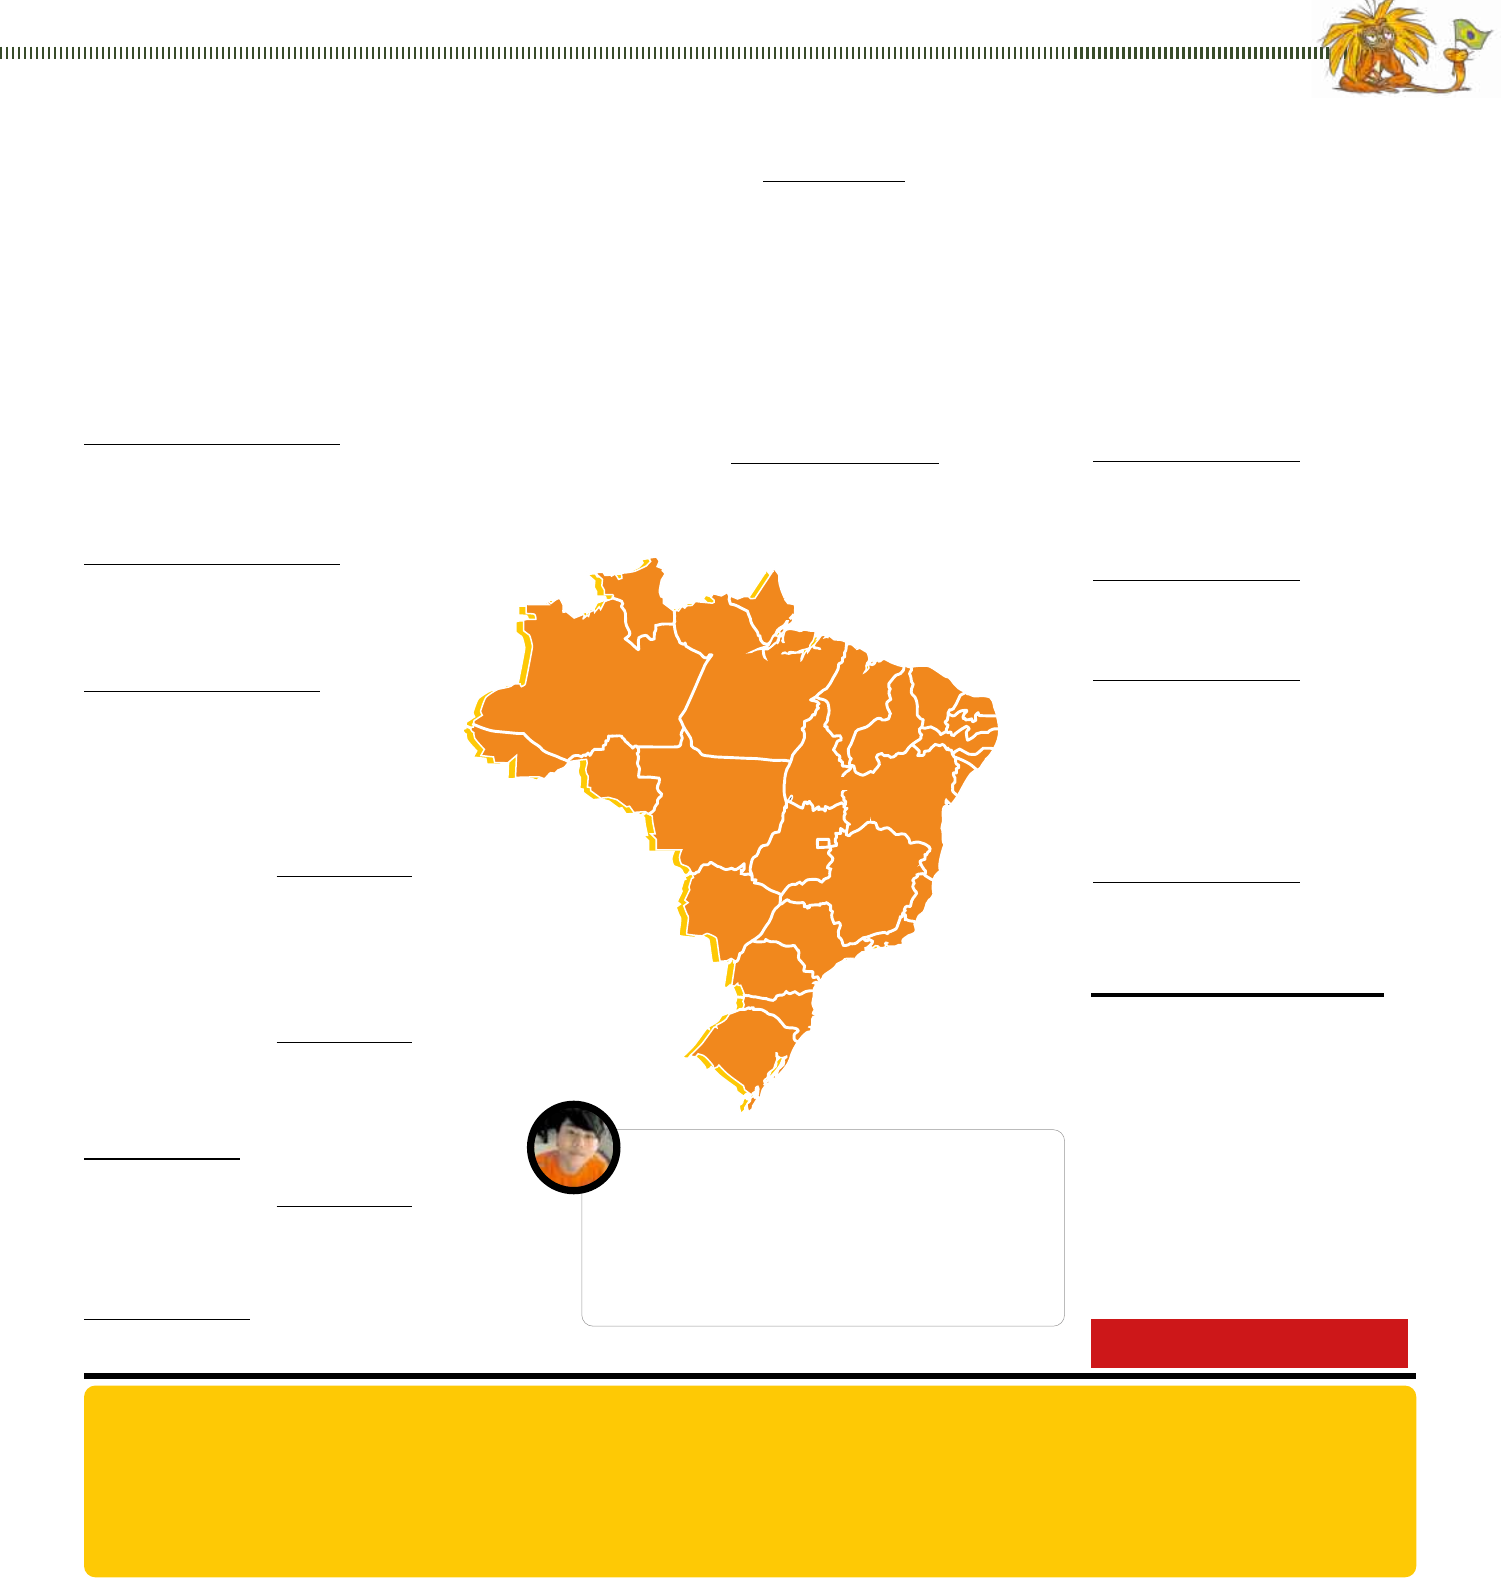 Jornal Joca - No Brasil, dia 20 de Novembro é o Dia